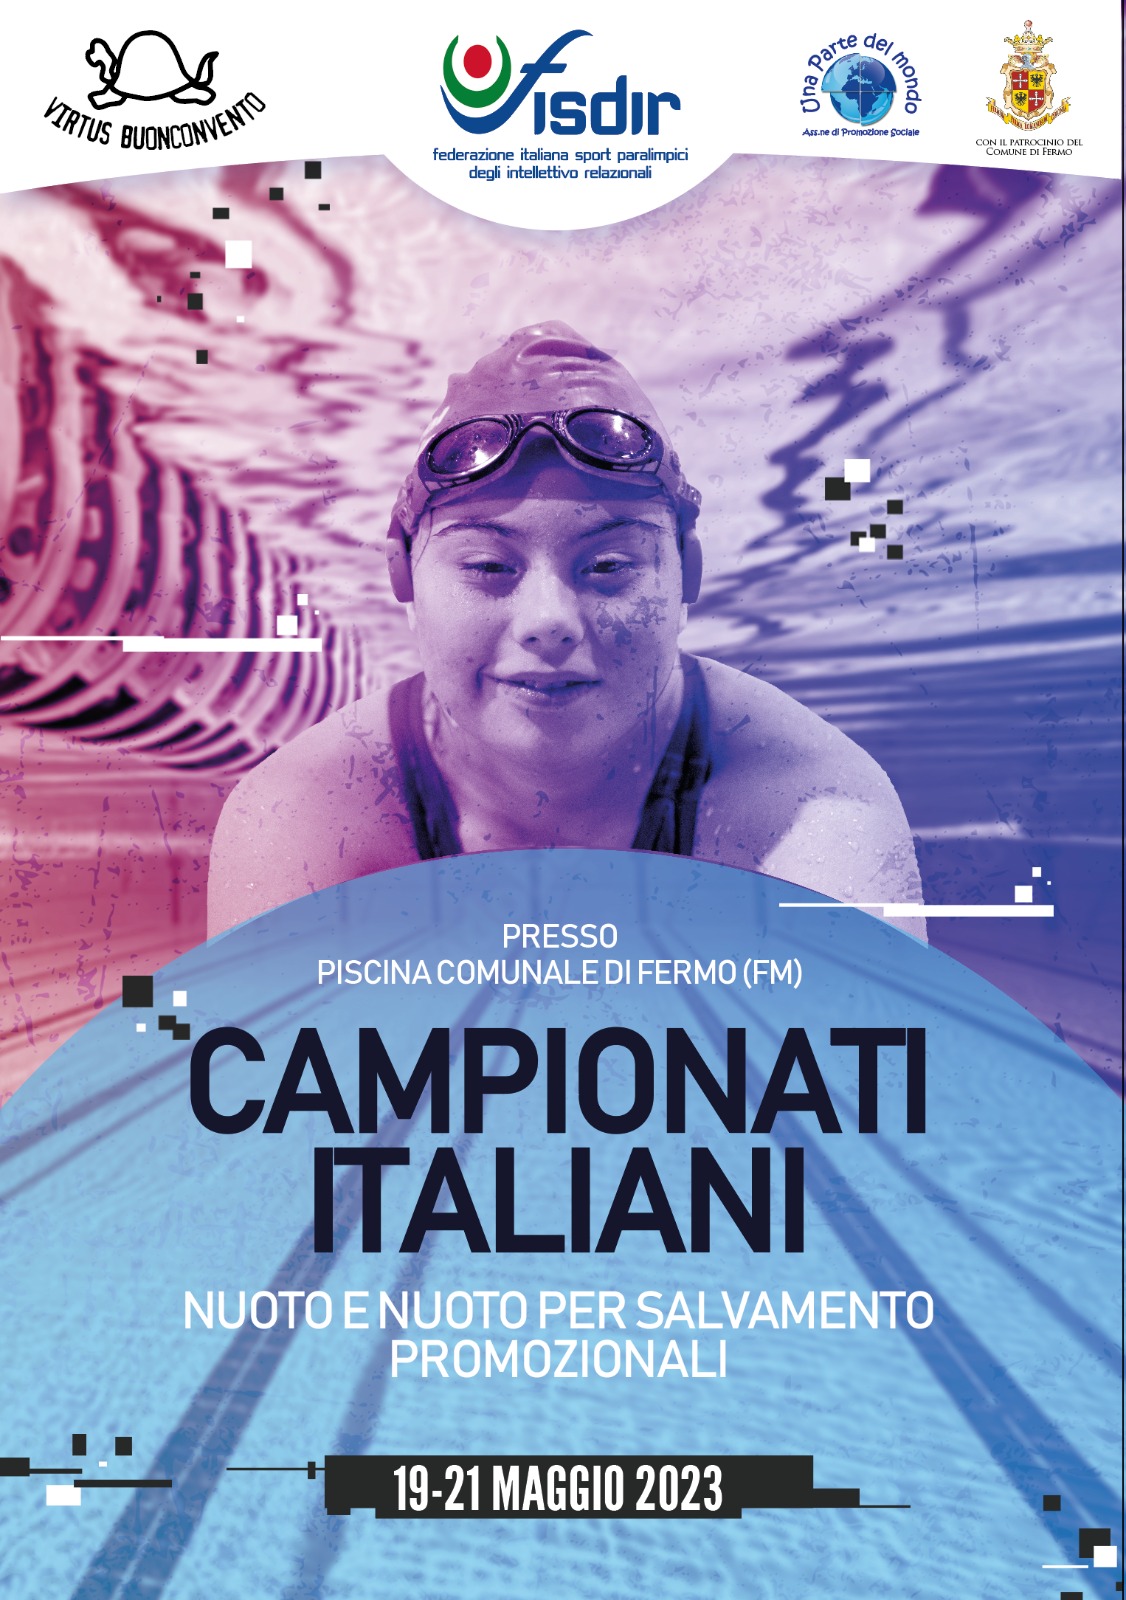 Campionati Italiani Promozionali Nuoto e Nuoto per salvamento fisdir